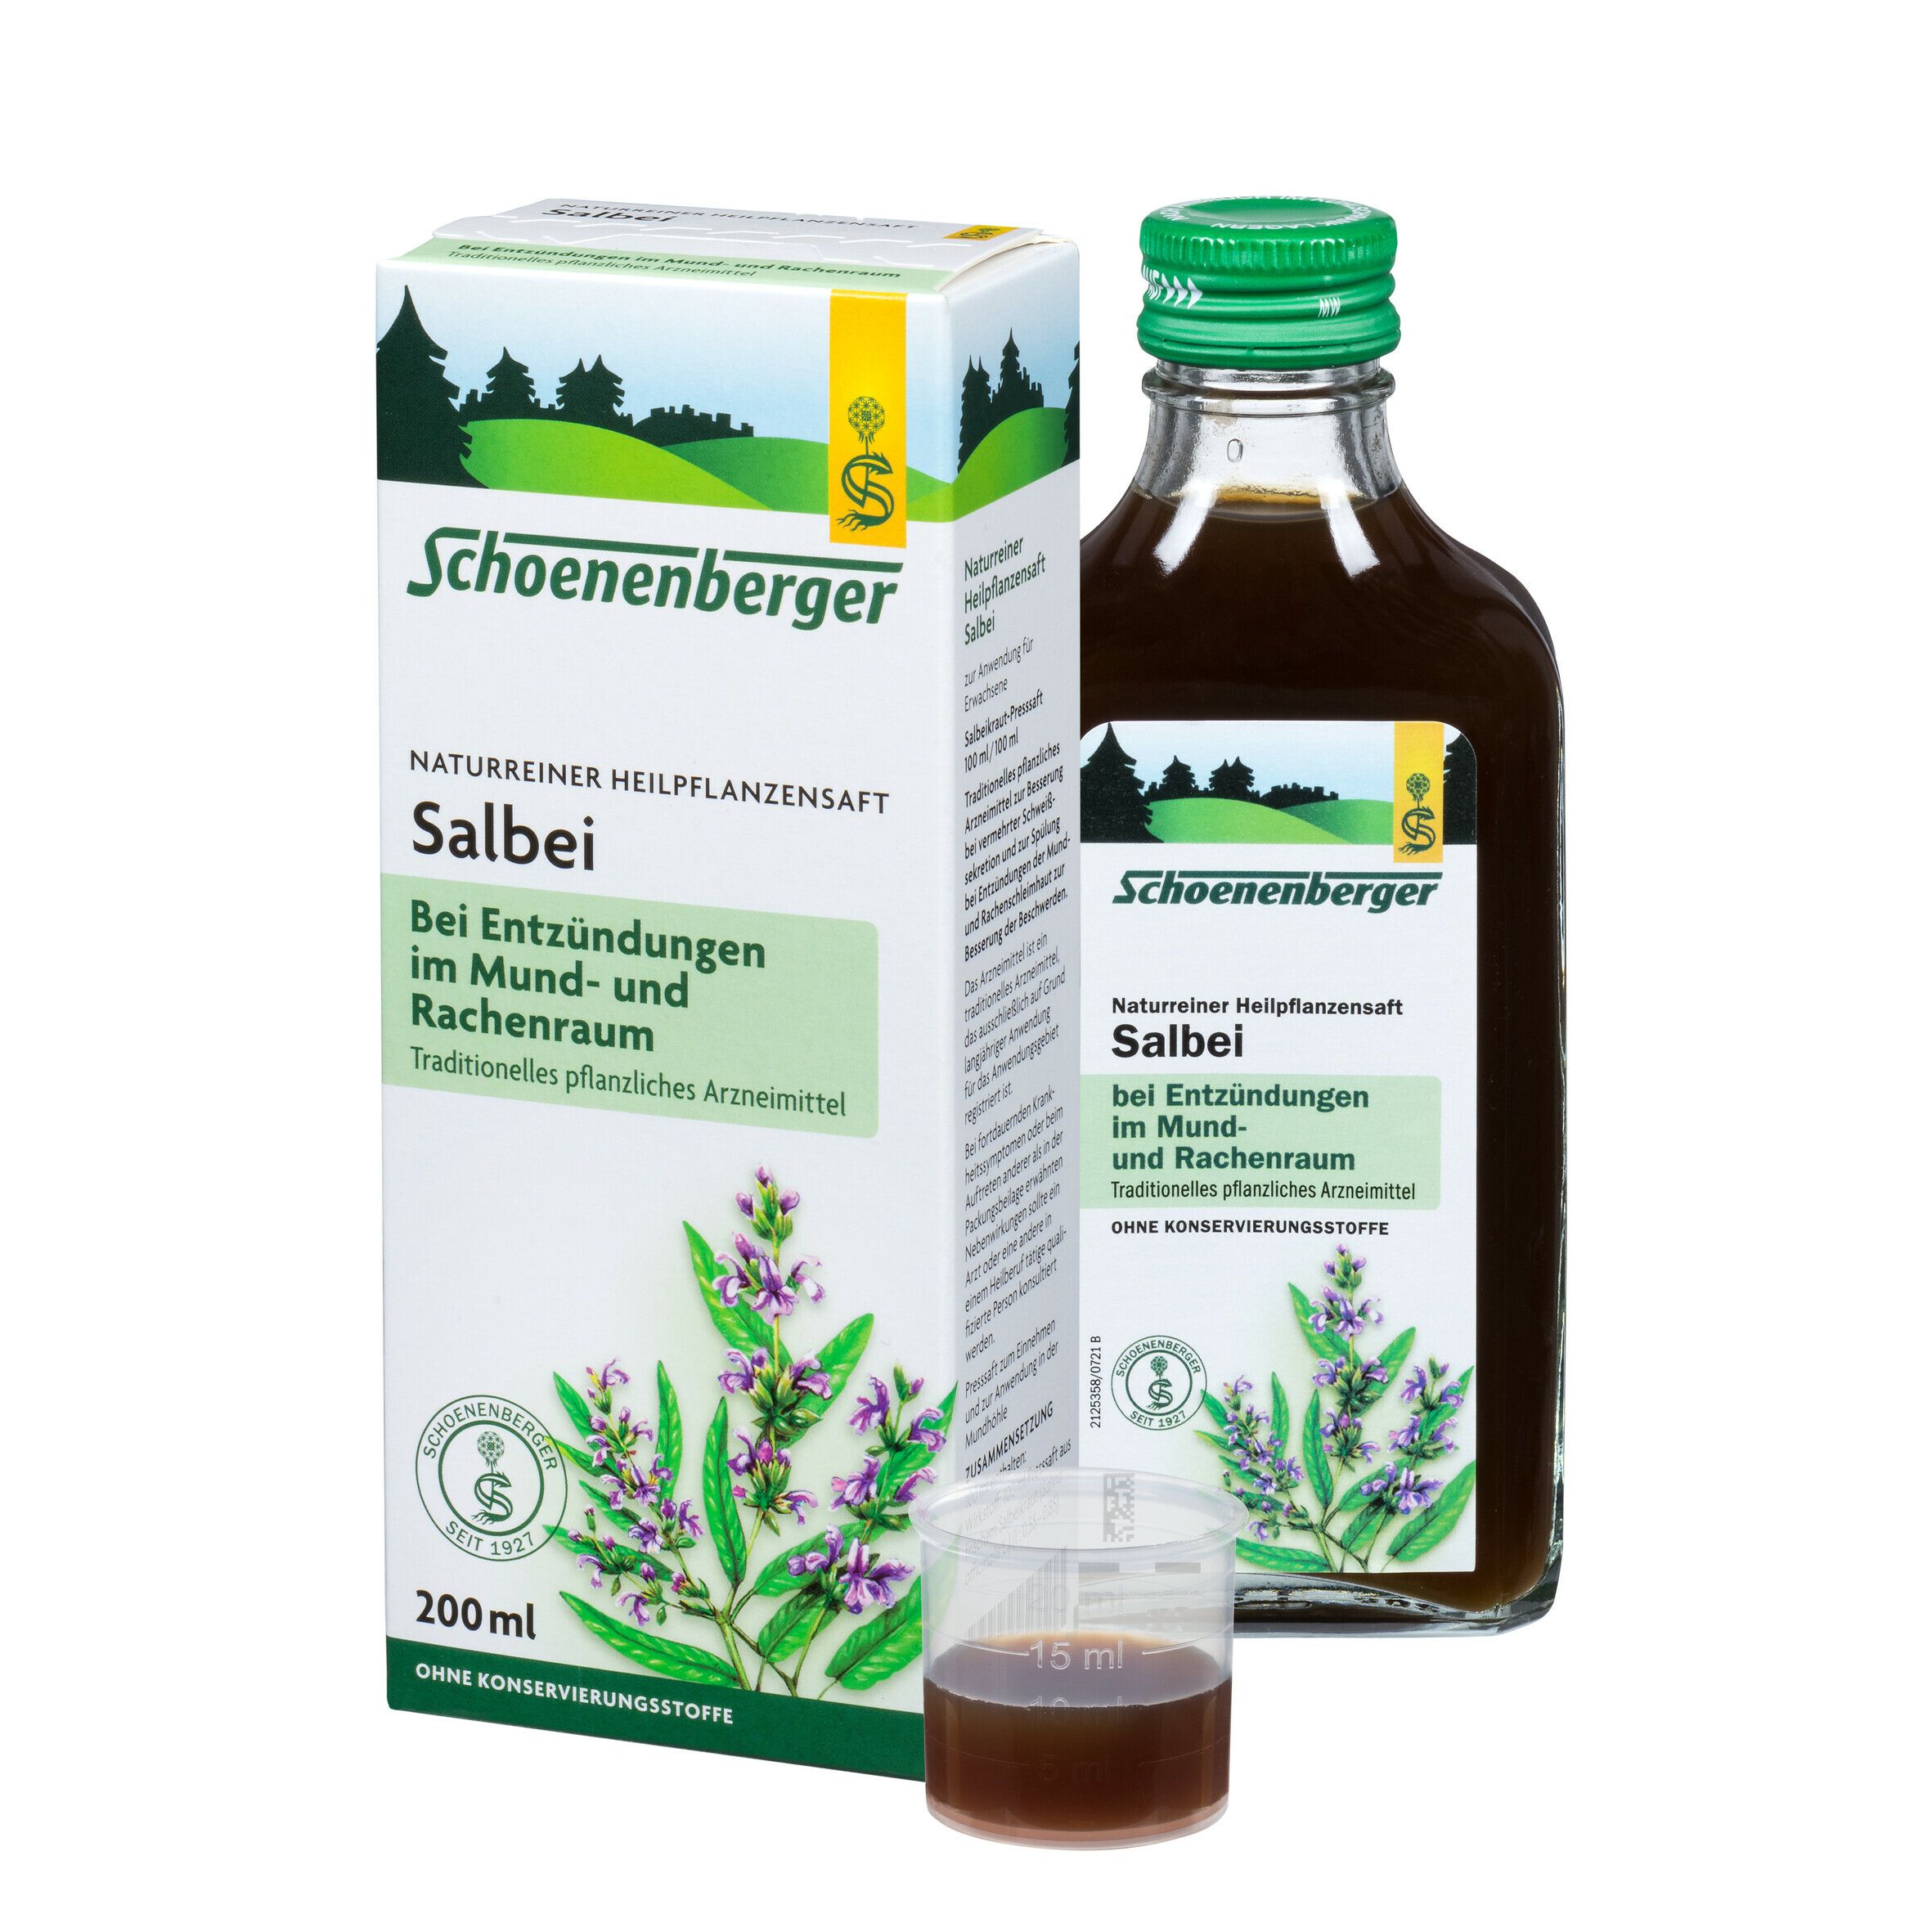 Schoenenberger® naturreiner Heilpflanzensaft Salbei